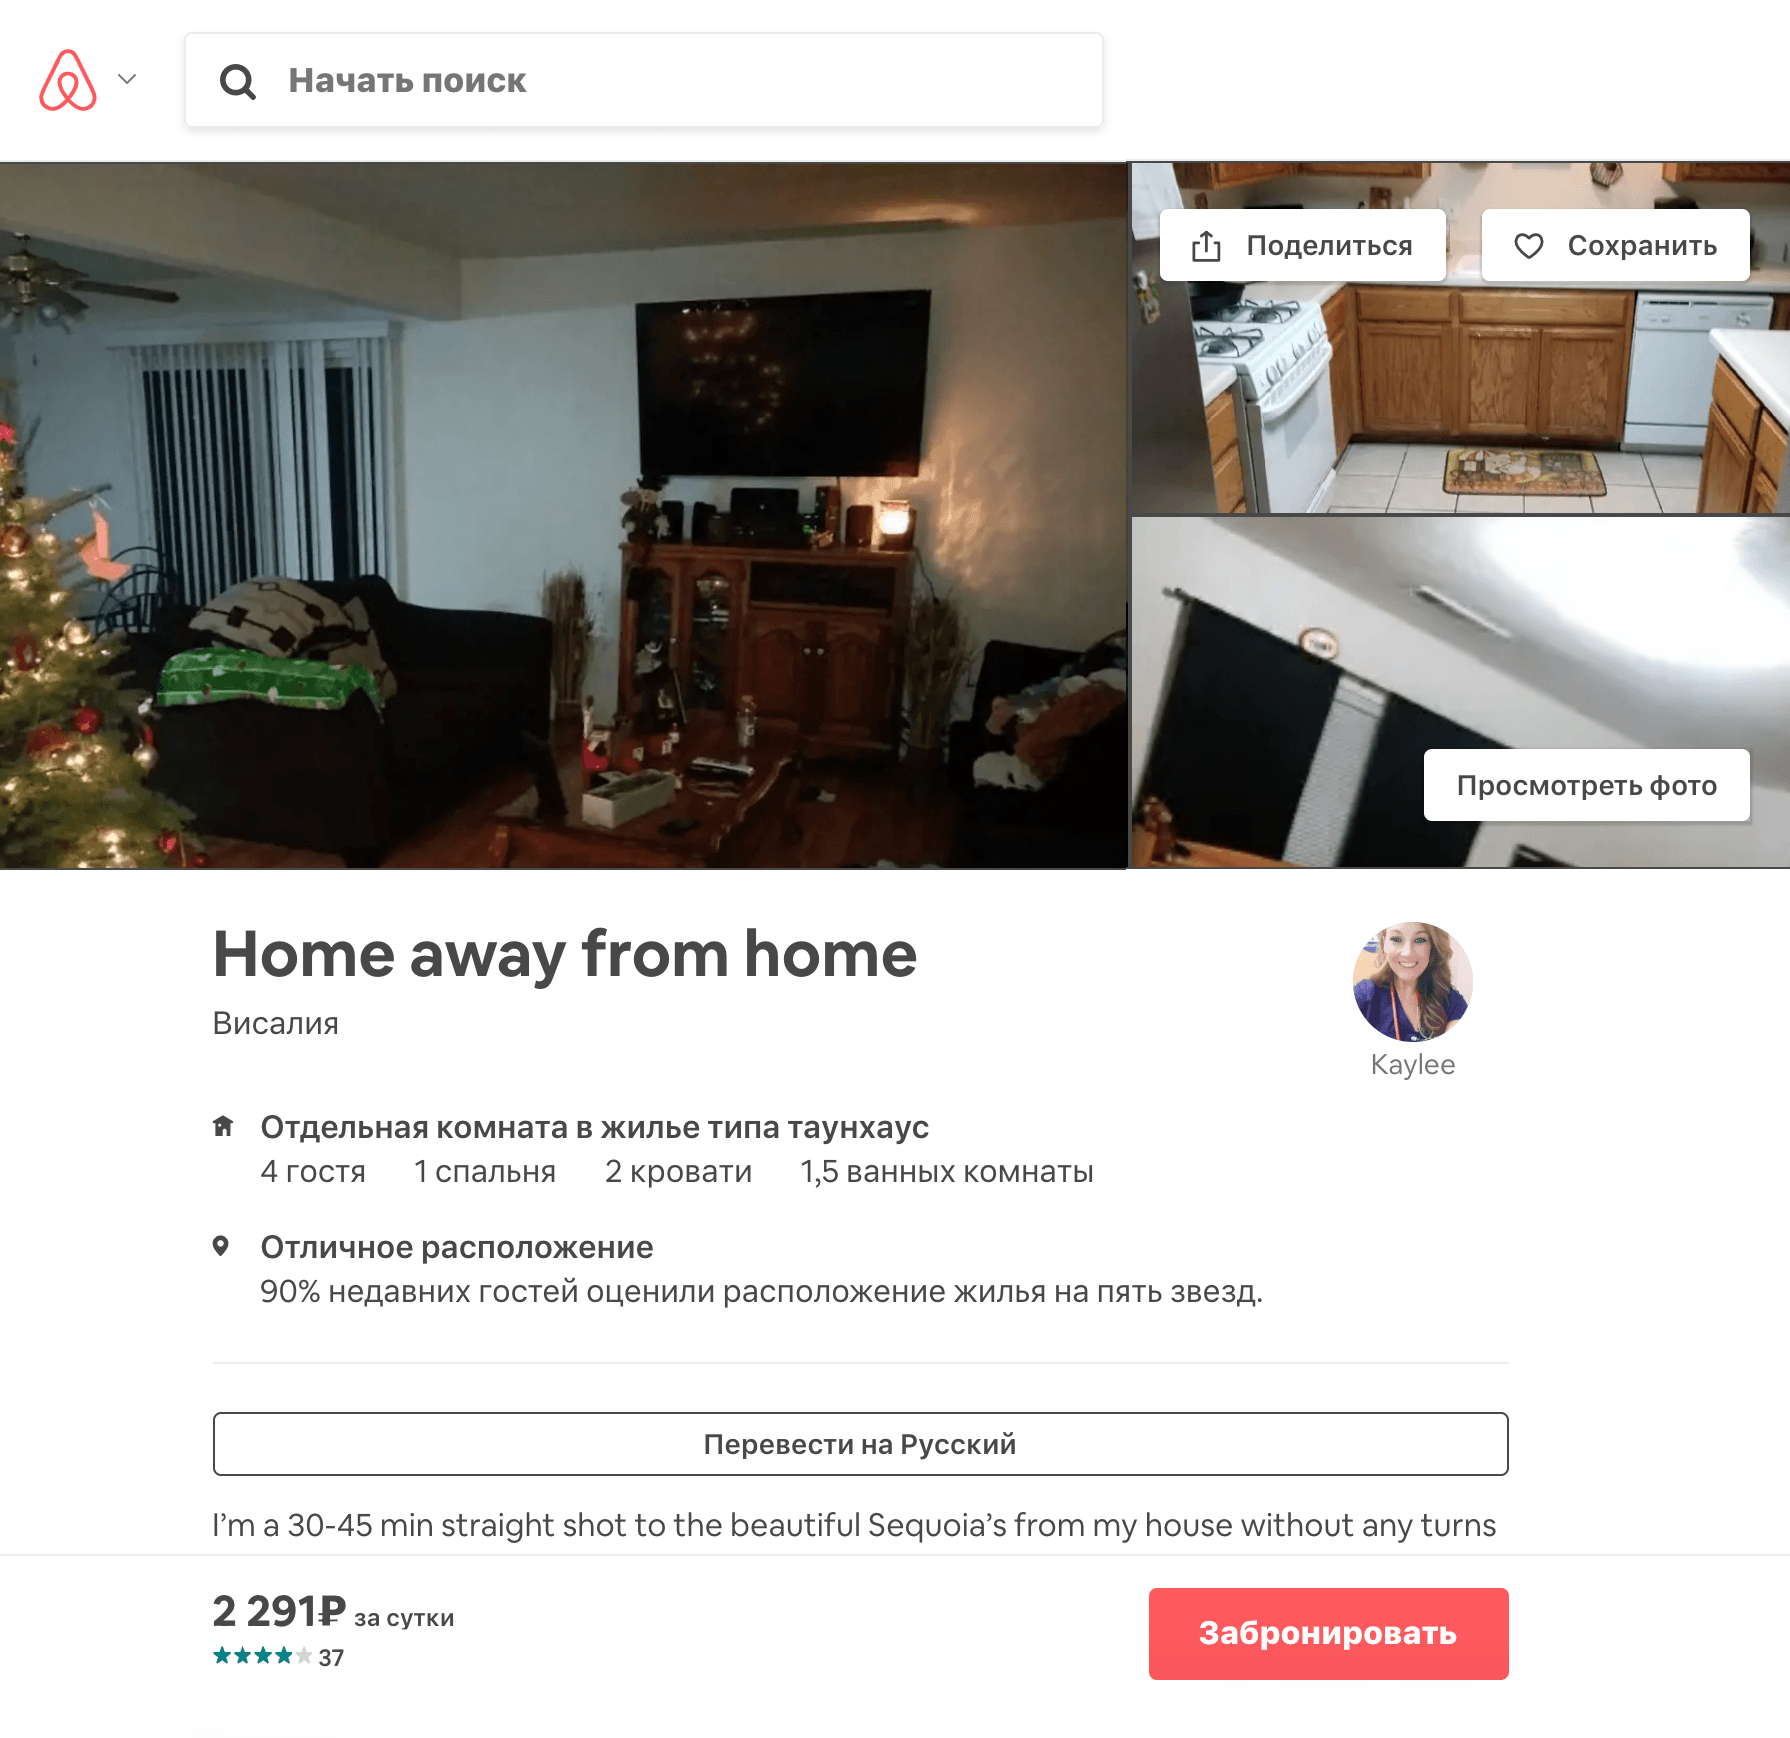 Так выглядело объявление на Airbnb. Когда мы ее бронировали, комната стоила 69 $ за двое суток. Цена нас устроила, и мы отправили хозяйке запрос на бронирование на нужные нам даты